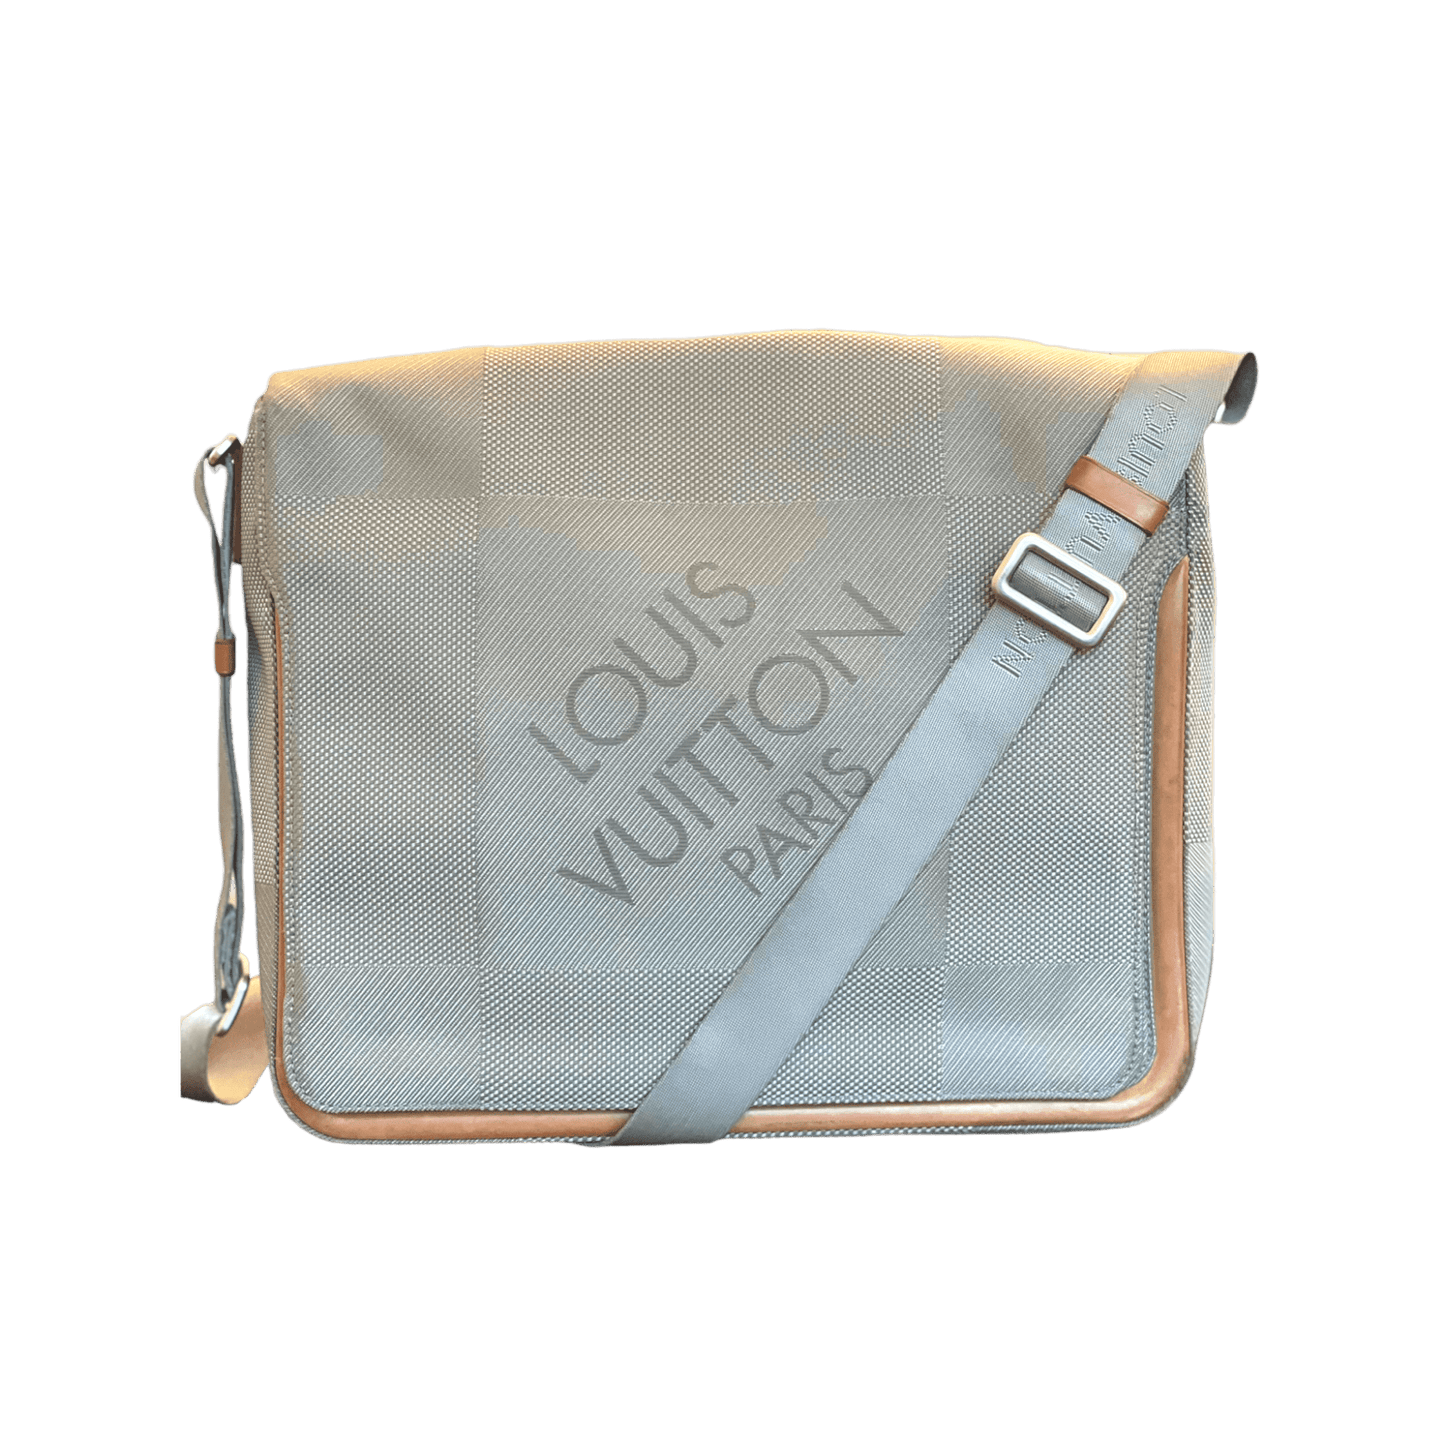 Louis Vuitton Damier Geant Terre Messenger Bag - Brown Satchels